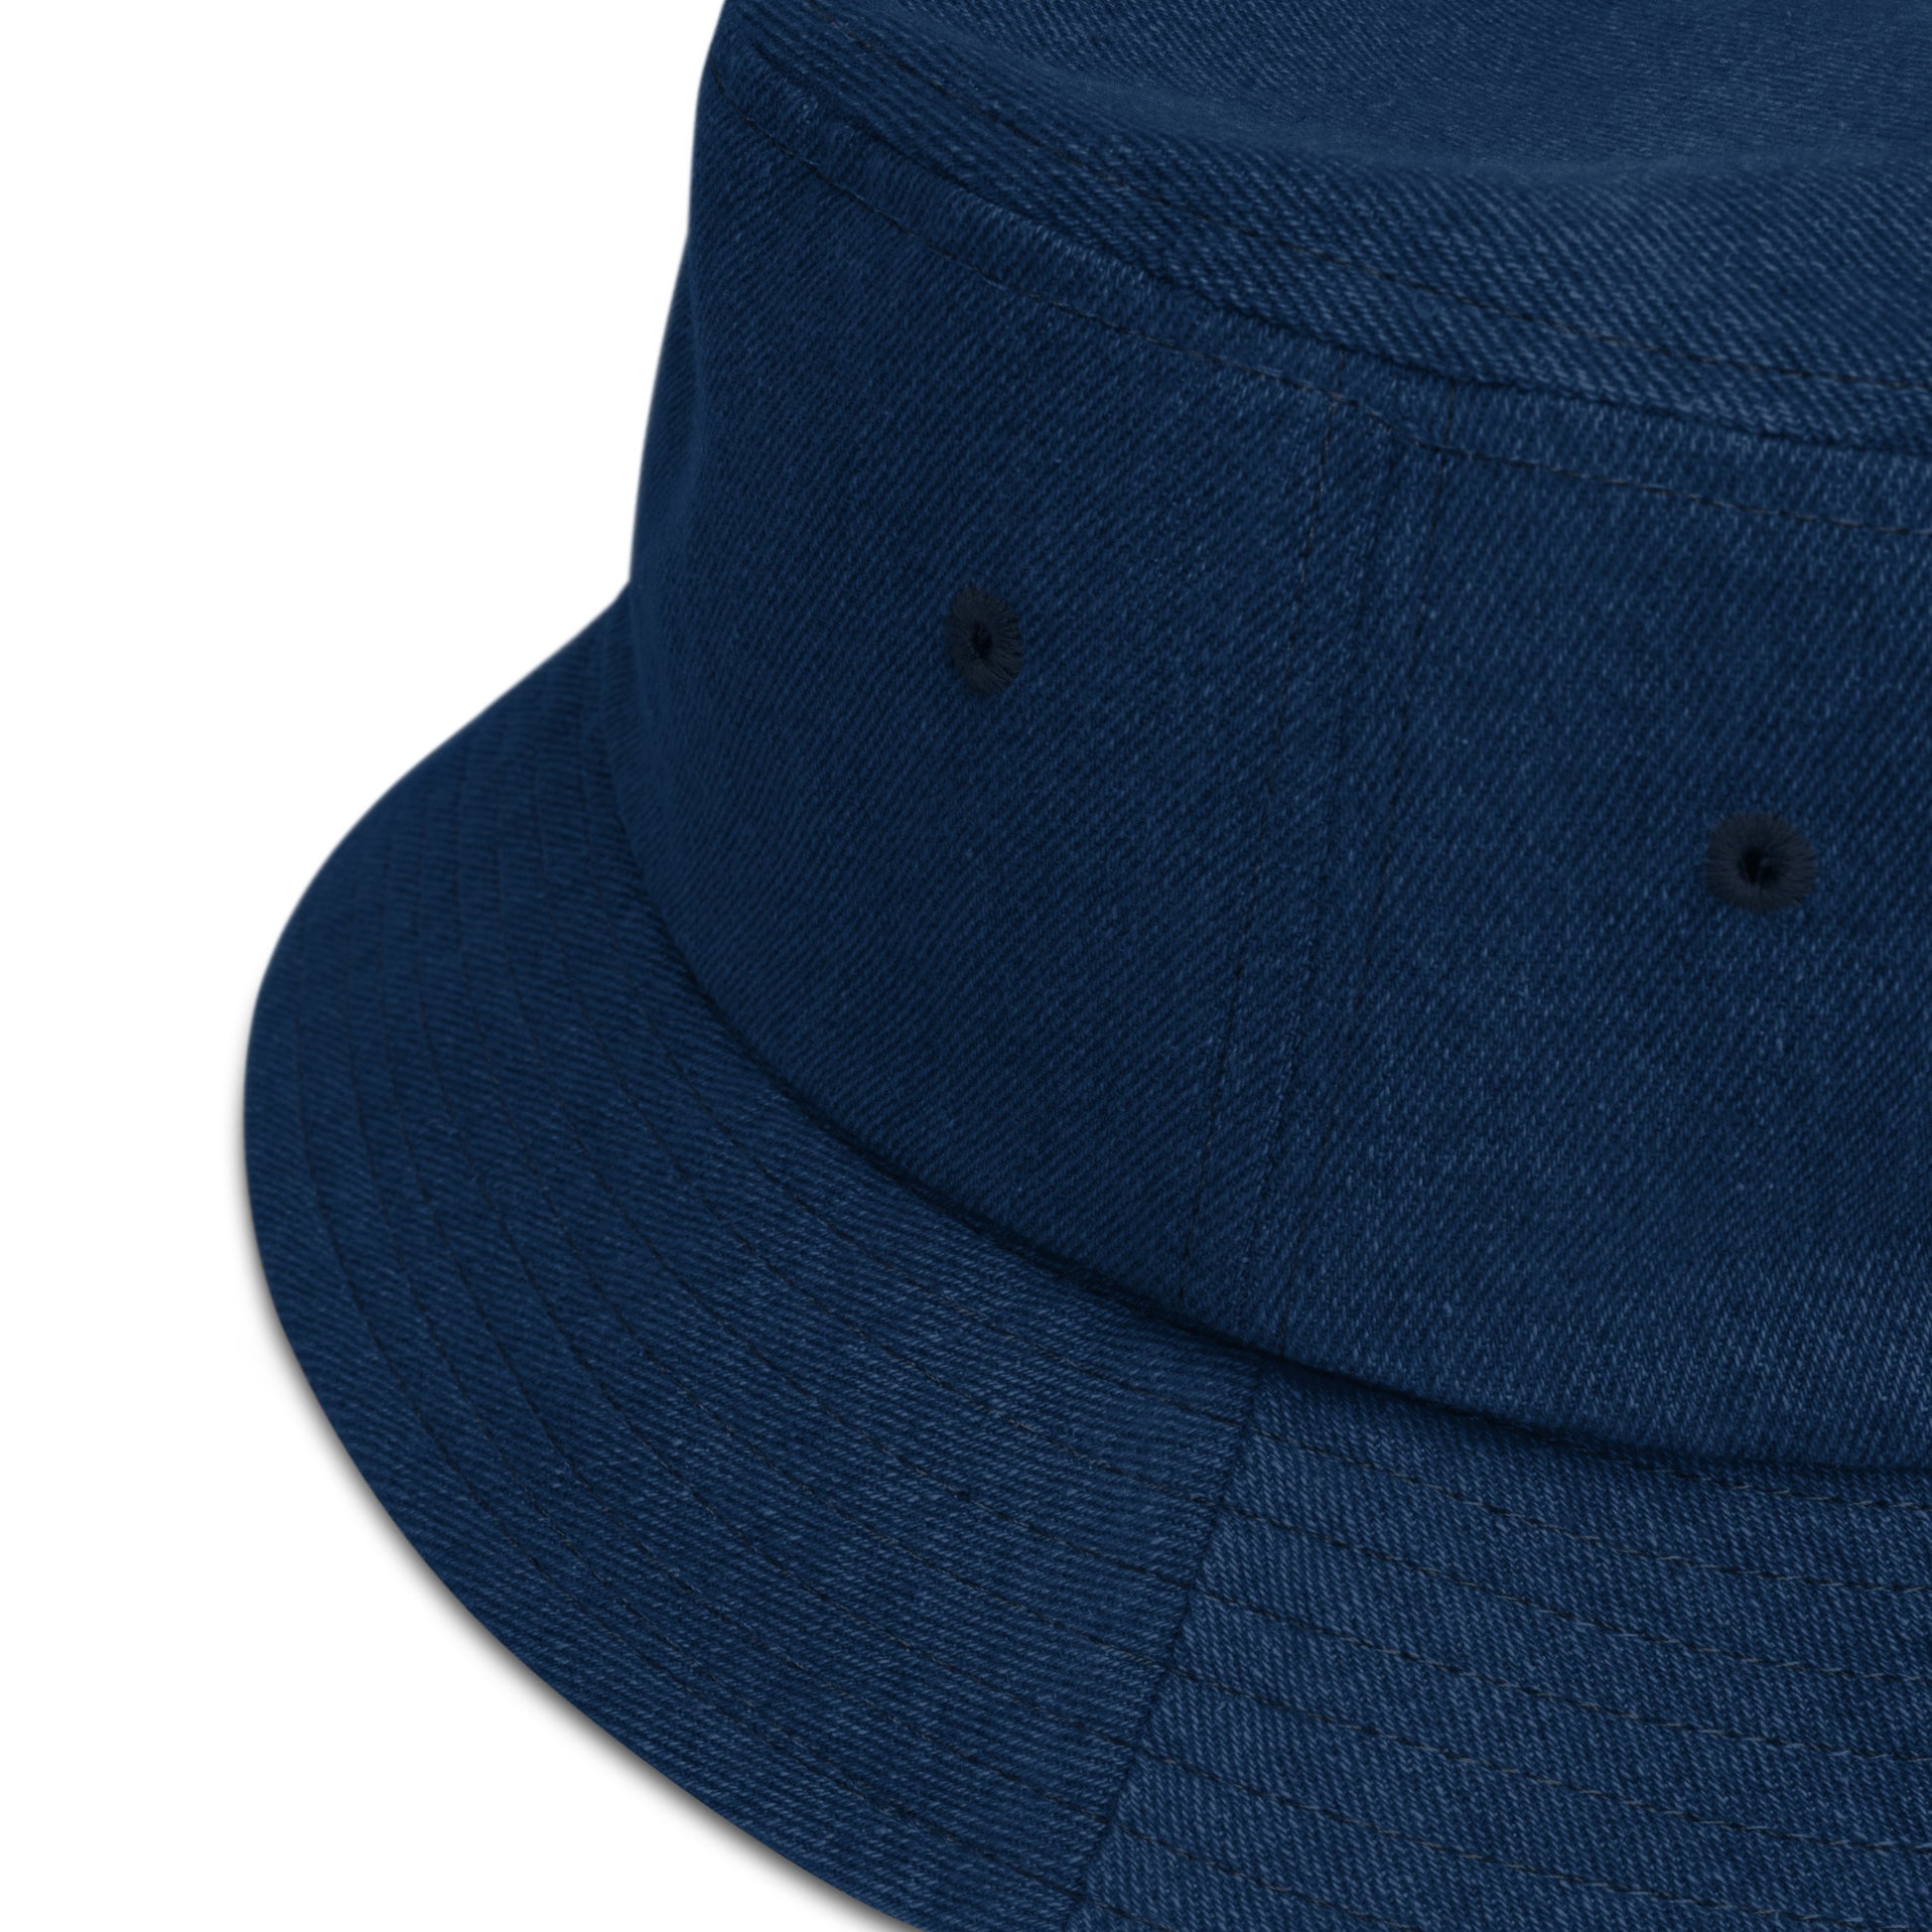 Humble Sportswear™ Mulberry Cotton Denim Bucket Hat - Mireille Fine Art